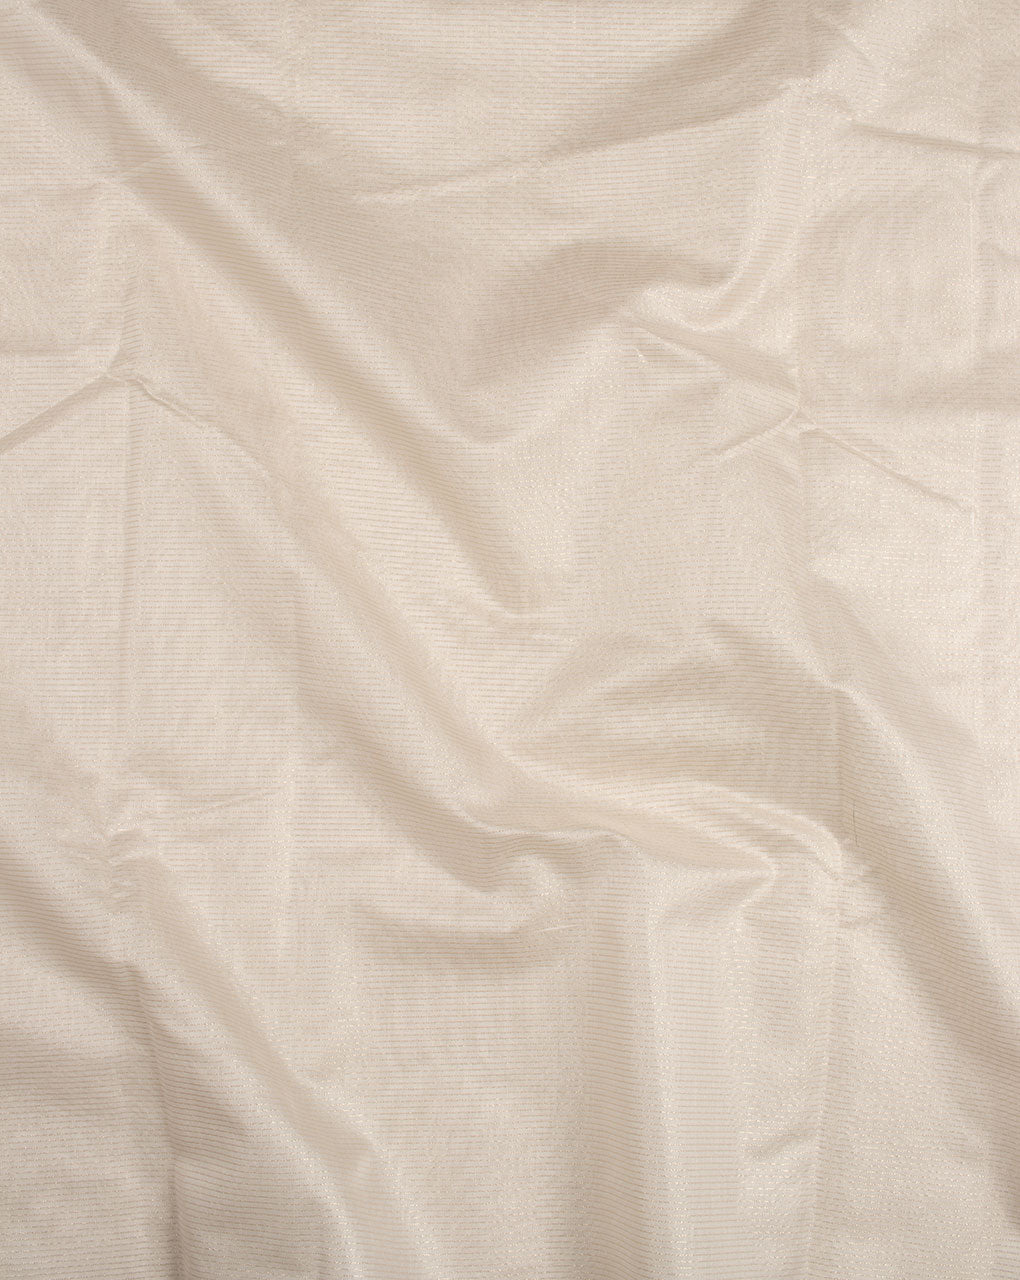 Off-White Zari Stripes Woven Zari Border Dyeable Chanderi Fabric - Fabriclore.com